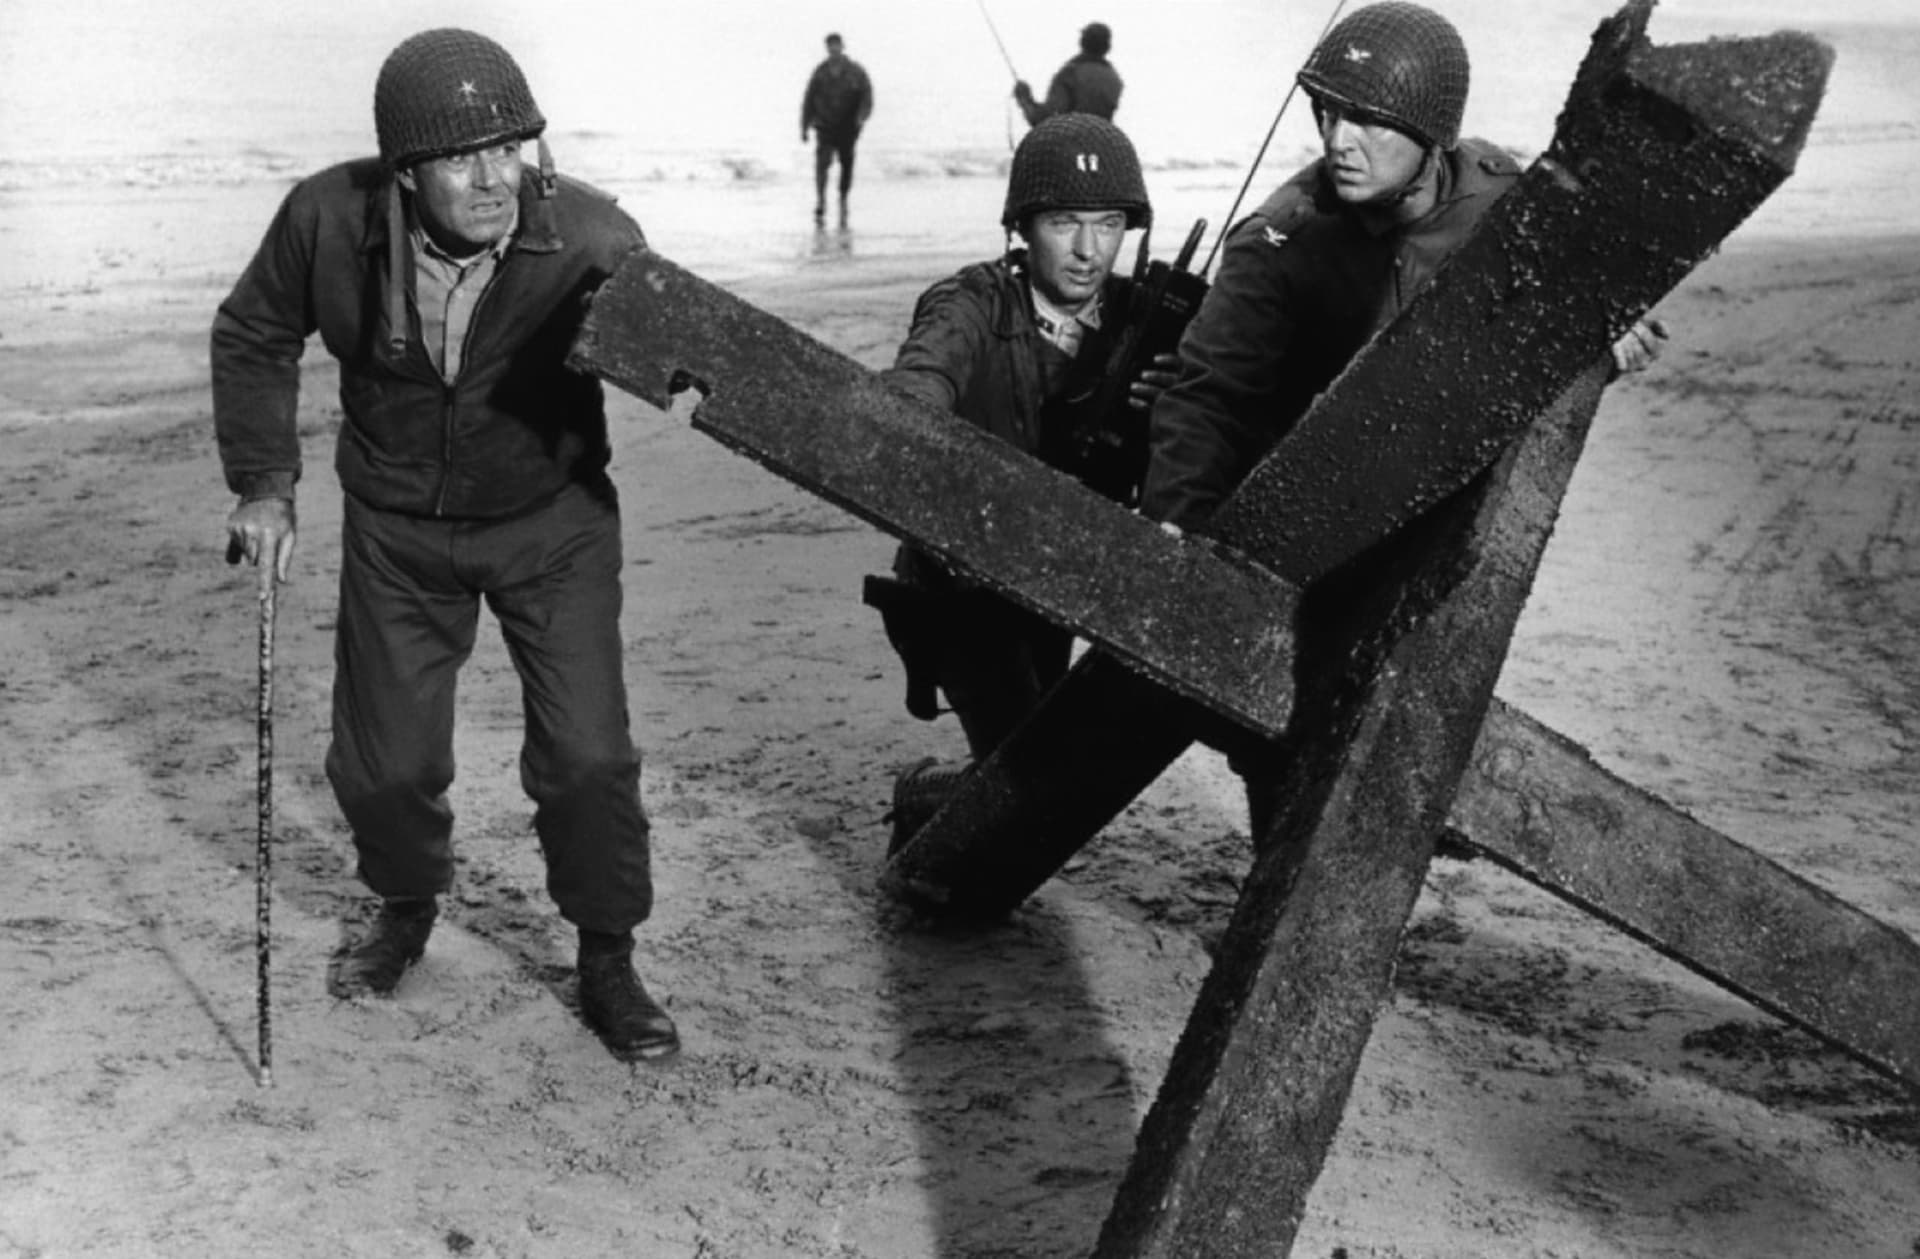 Mezi nejlepší filmy zachycující vylodění v Normandii patří Nejdelší den z roku 1962.